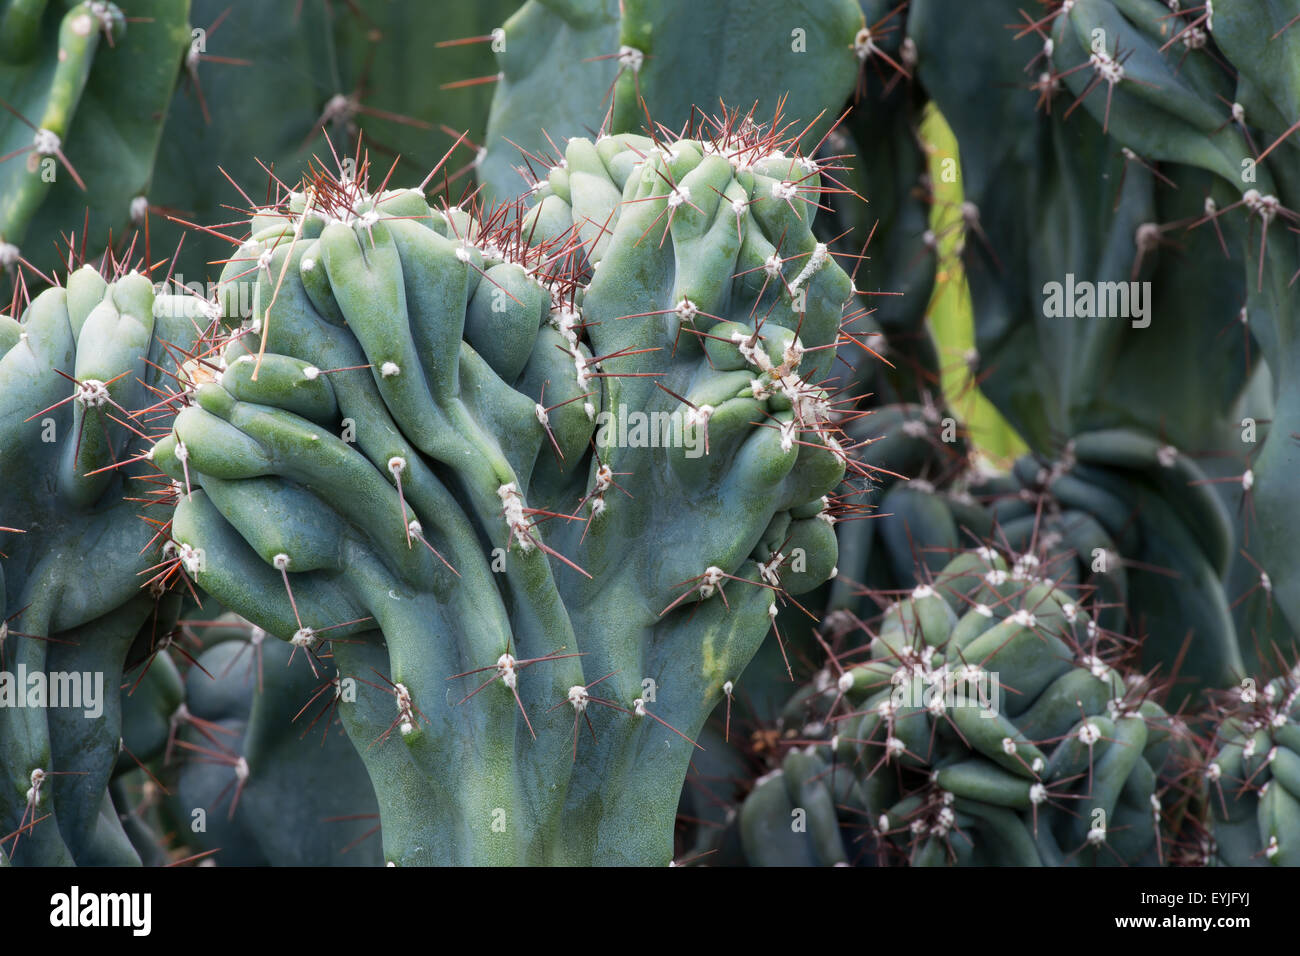 Plantas tropicales, cactus, Cereus hildmannianus monstrose cactaceae Foto de stock